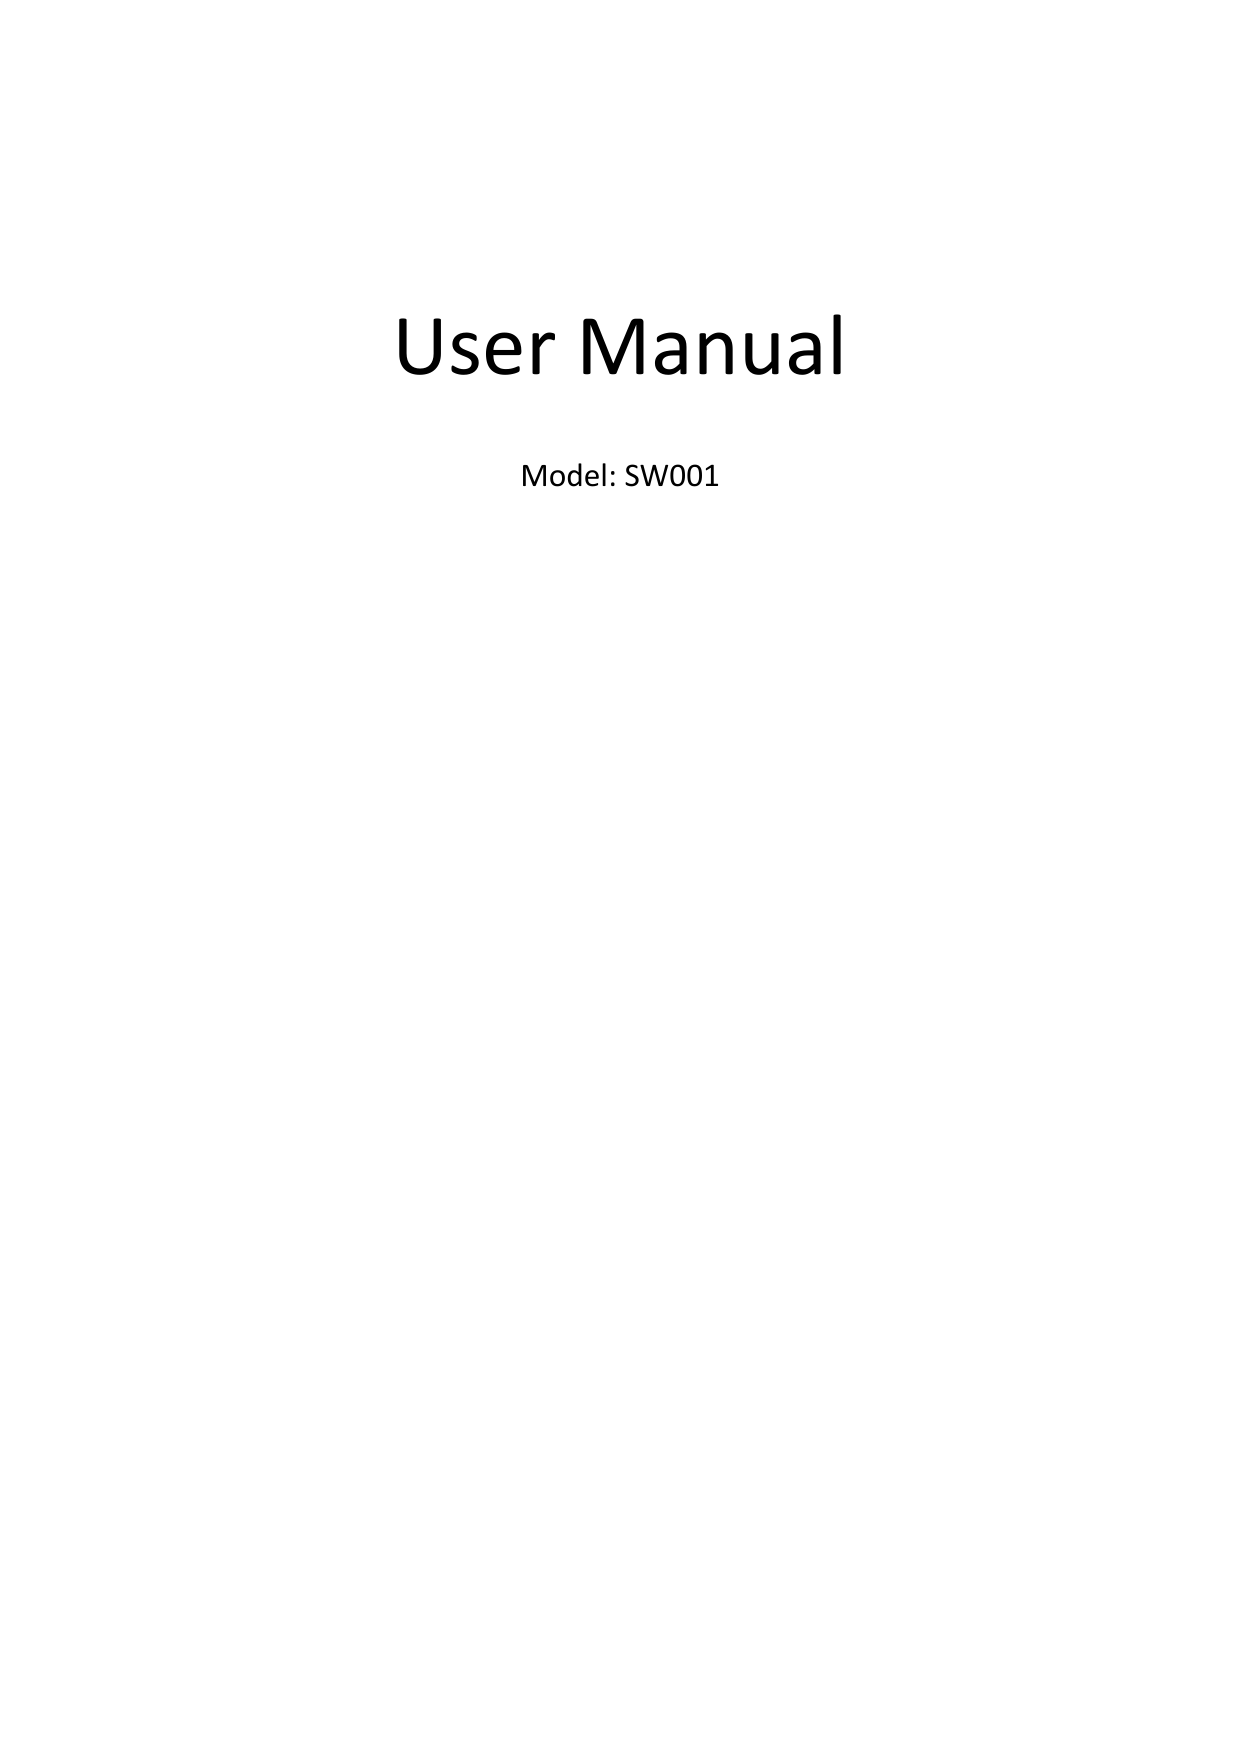 UserManualModel:SW001